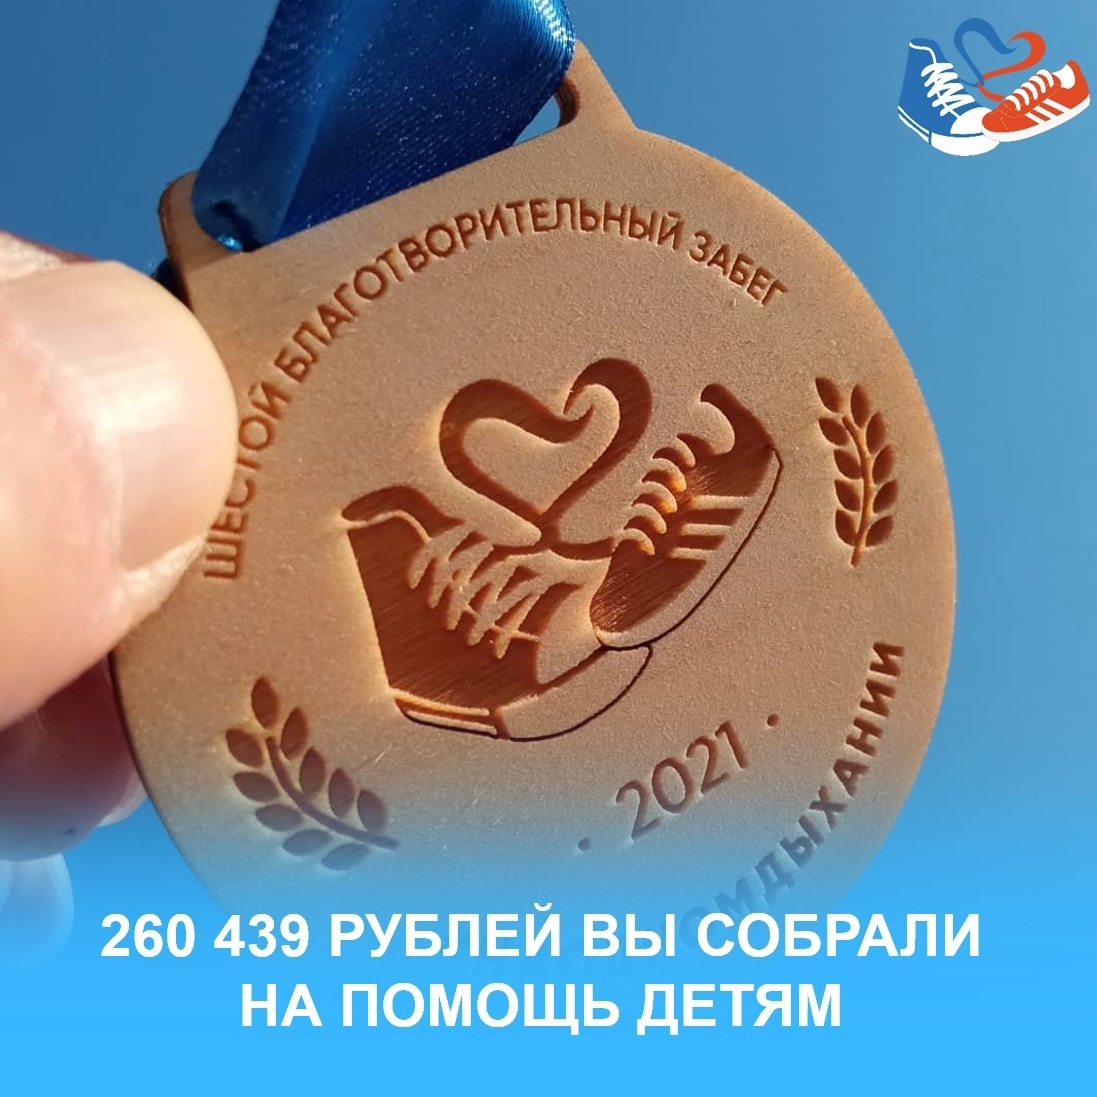 260 439 рублей на помощь детям!